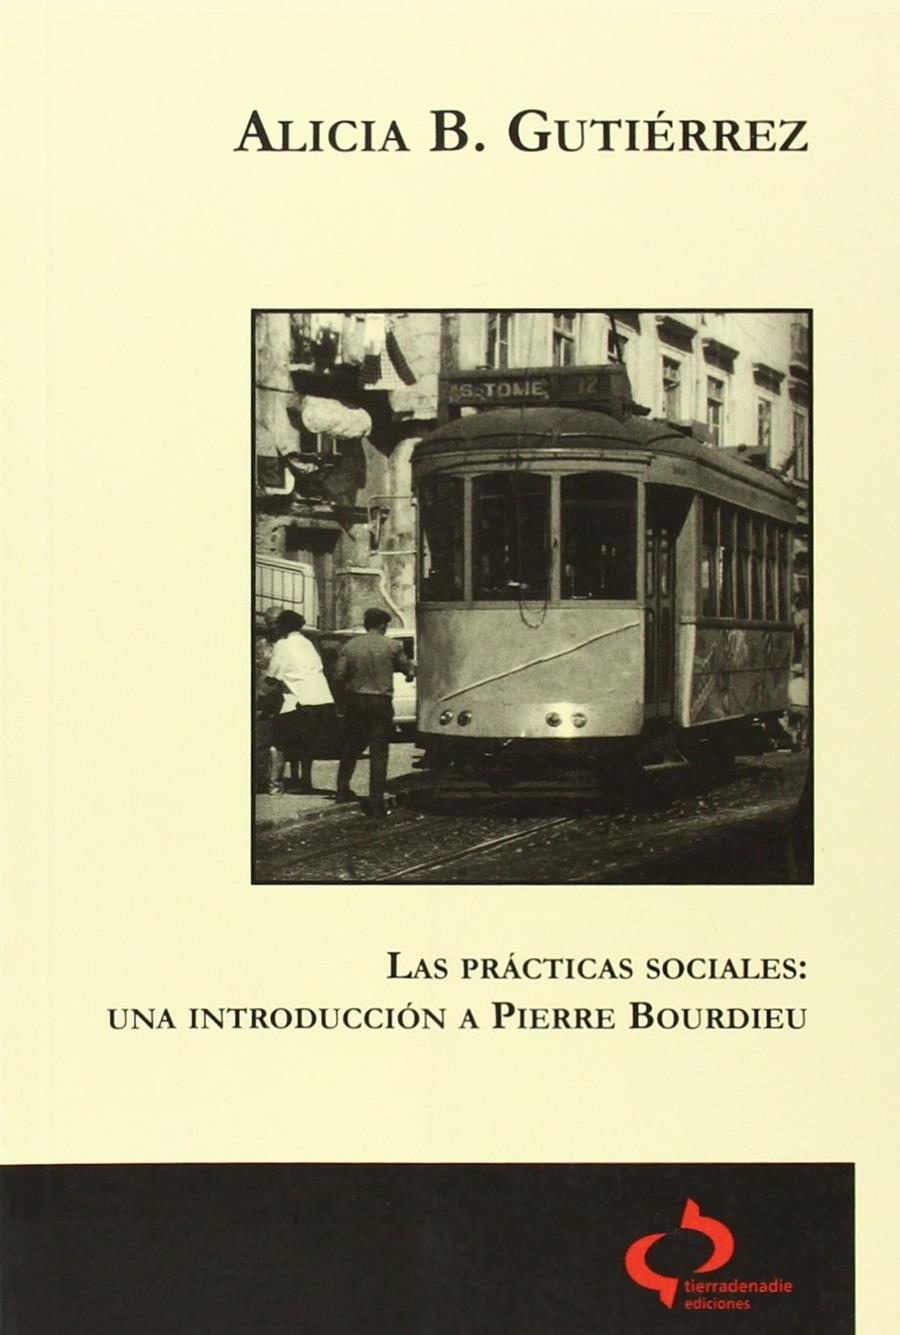 Las prácticas sociales: Una introducción a Pierre Bourdieu | Gutiérrez, Alicia B. | Cooperativa autogestionària